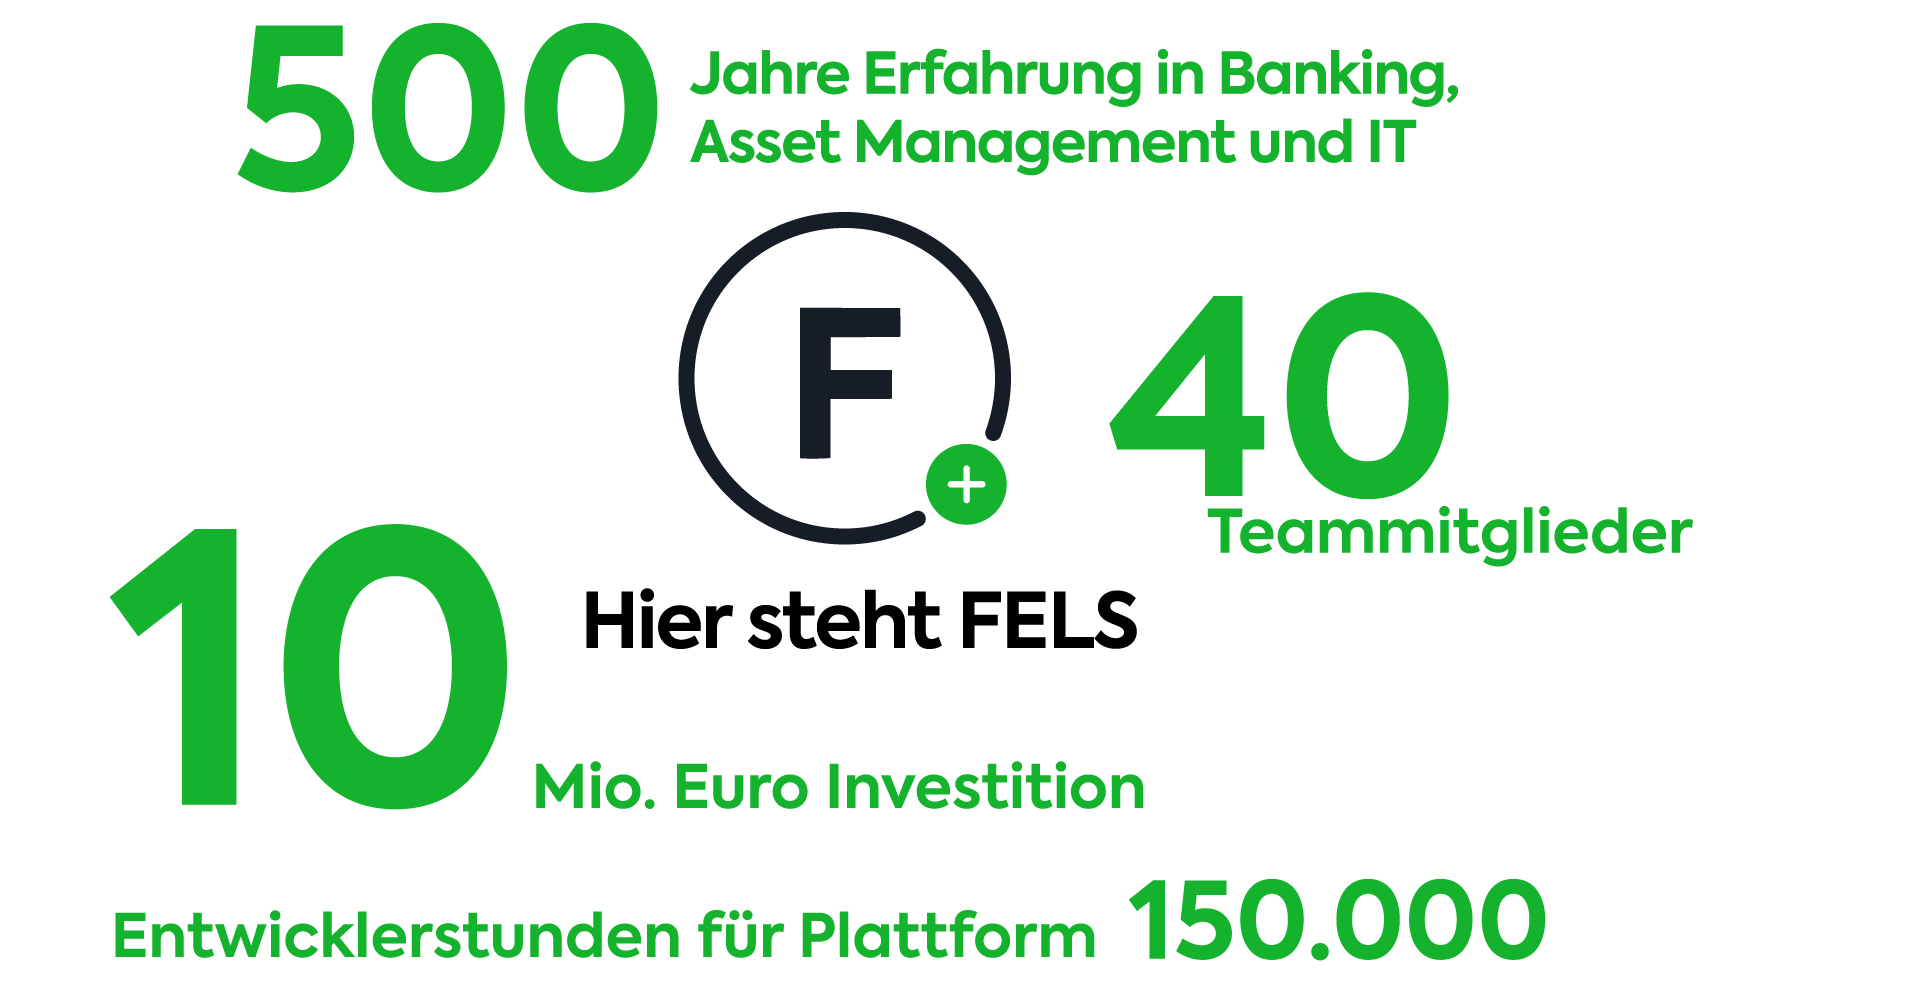 Hier steht FELS - FELS Group Tokenisierung 500 Jahre Erfahrung in Banking, Asset Management und IT, 10 Mio Euro Investition, 150000 Entwicklerstunden für Plattform, 40 Teammitglieder